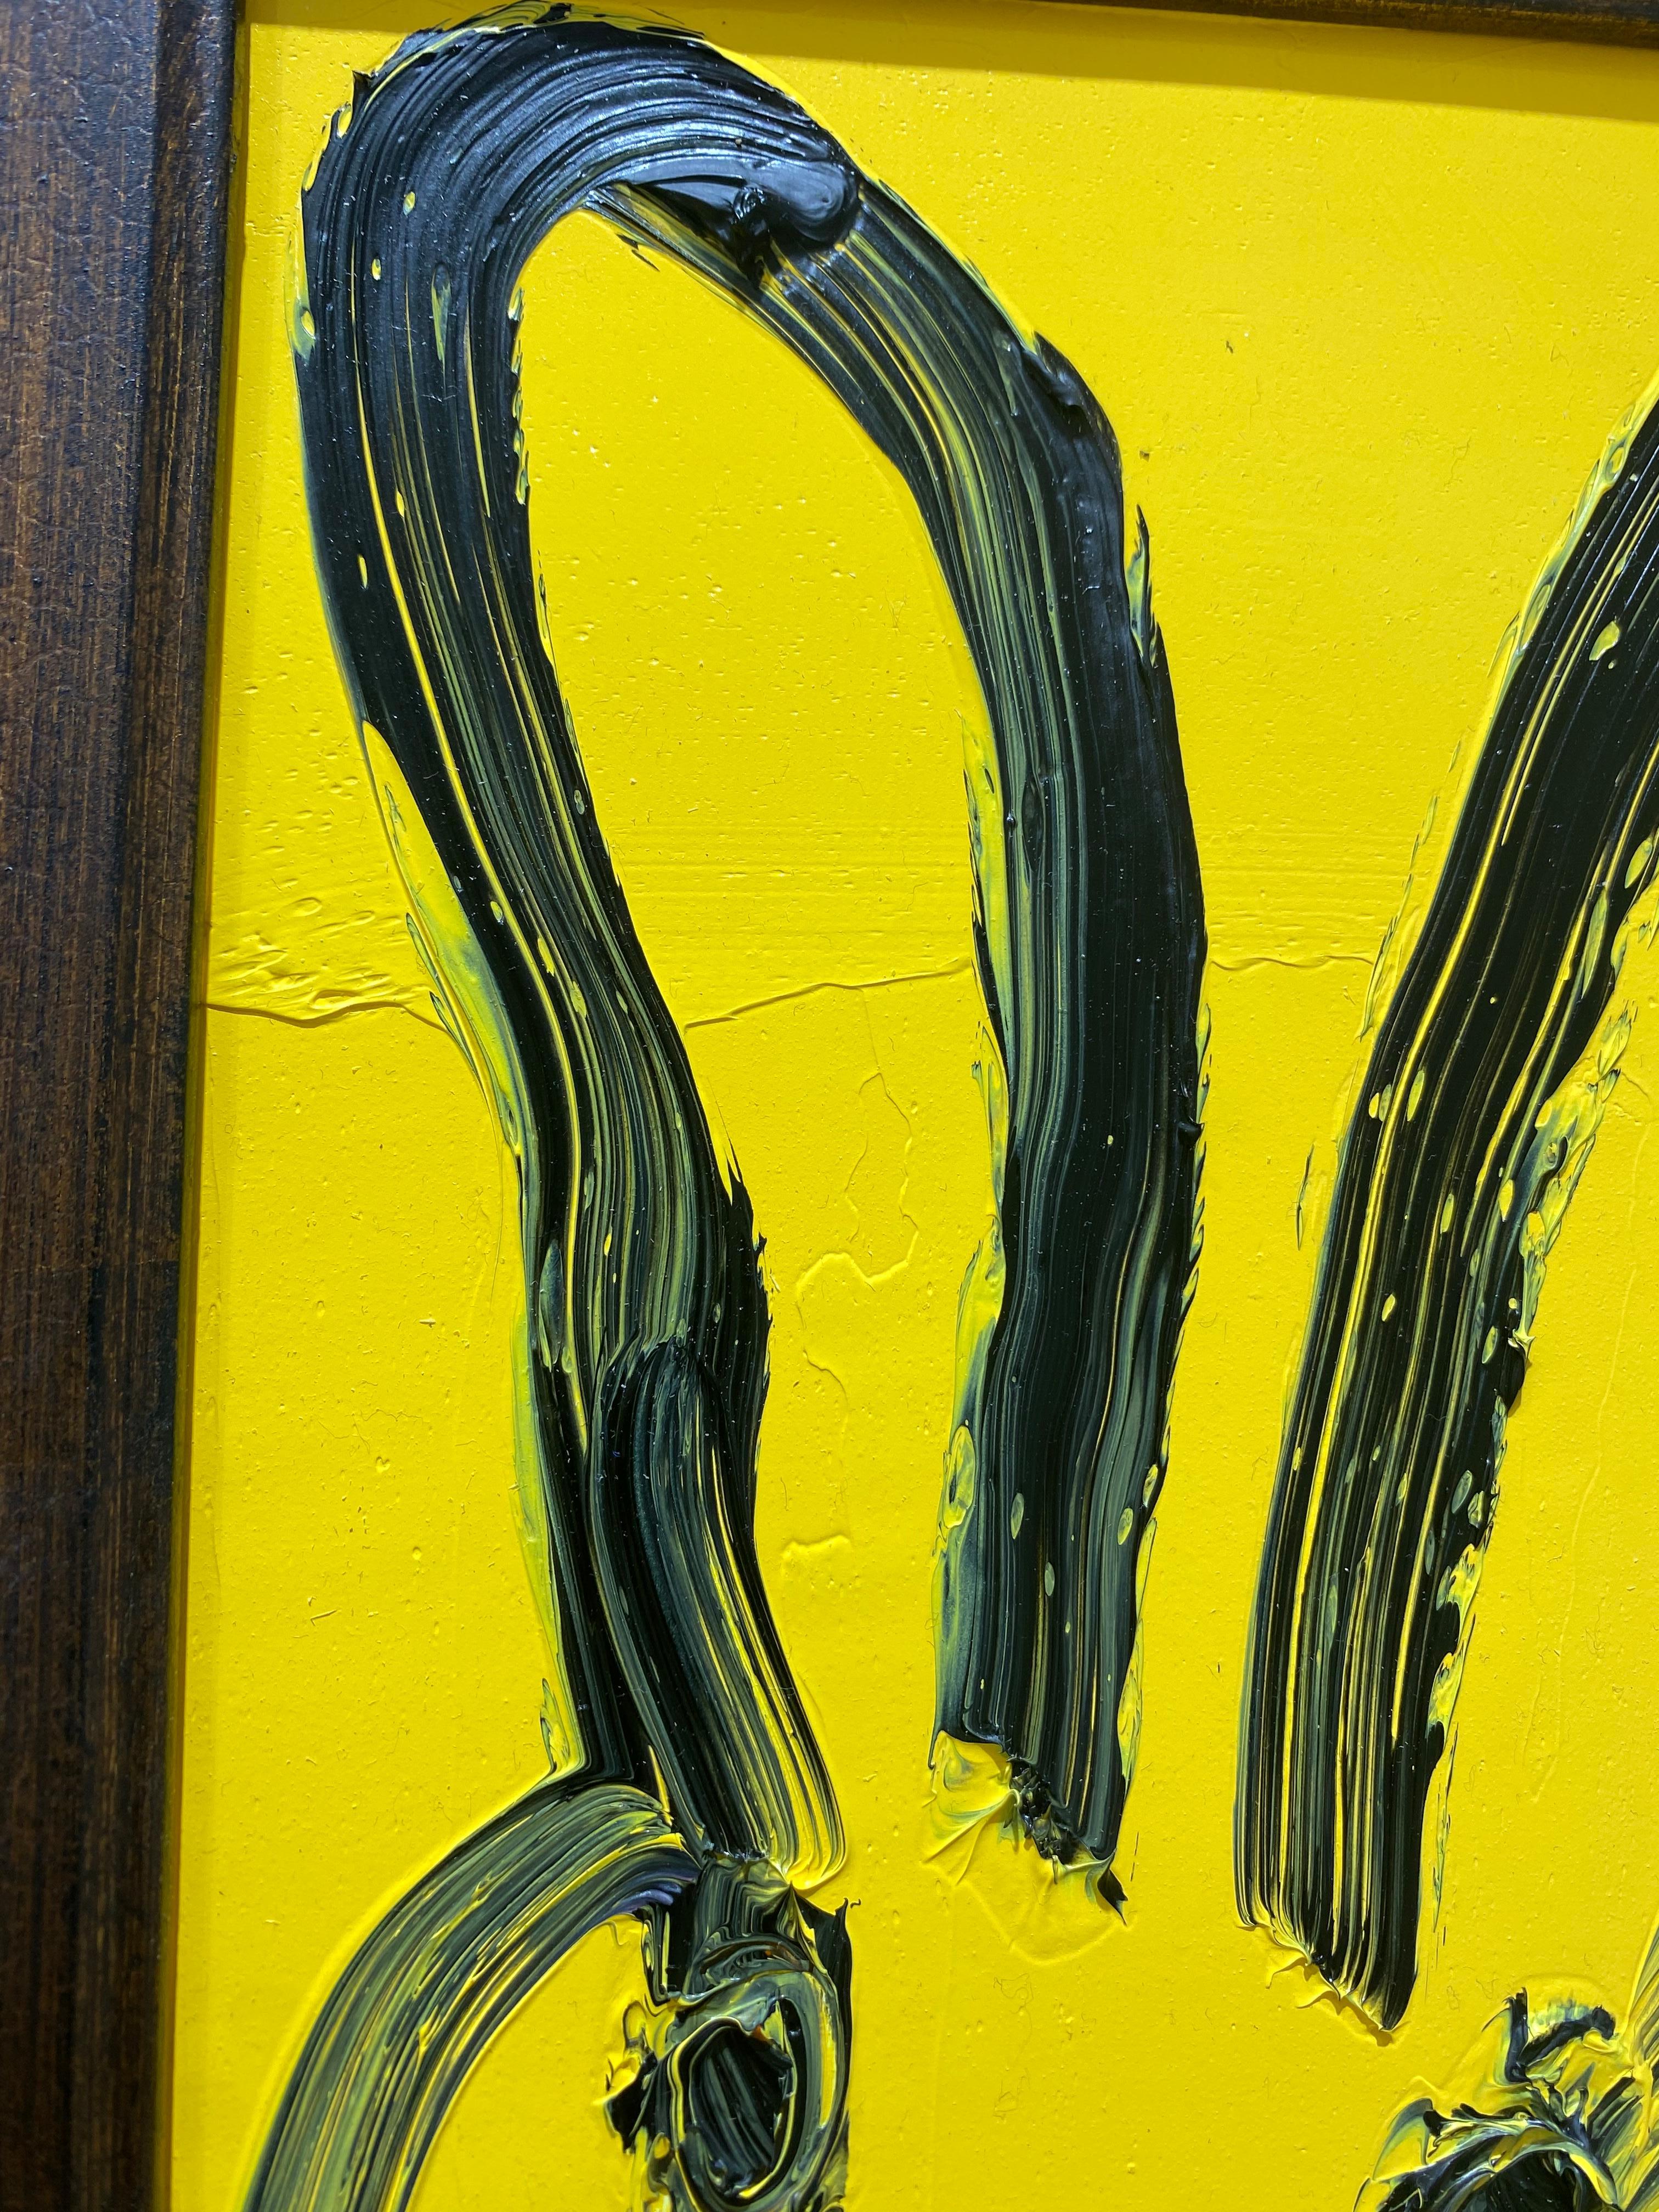 Jackie, 2022
Huile sur bois
Lapin au contour noir, jaune

Cadre collecté par l'artiste
